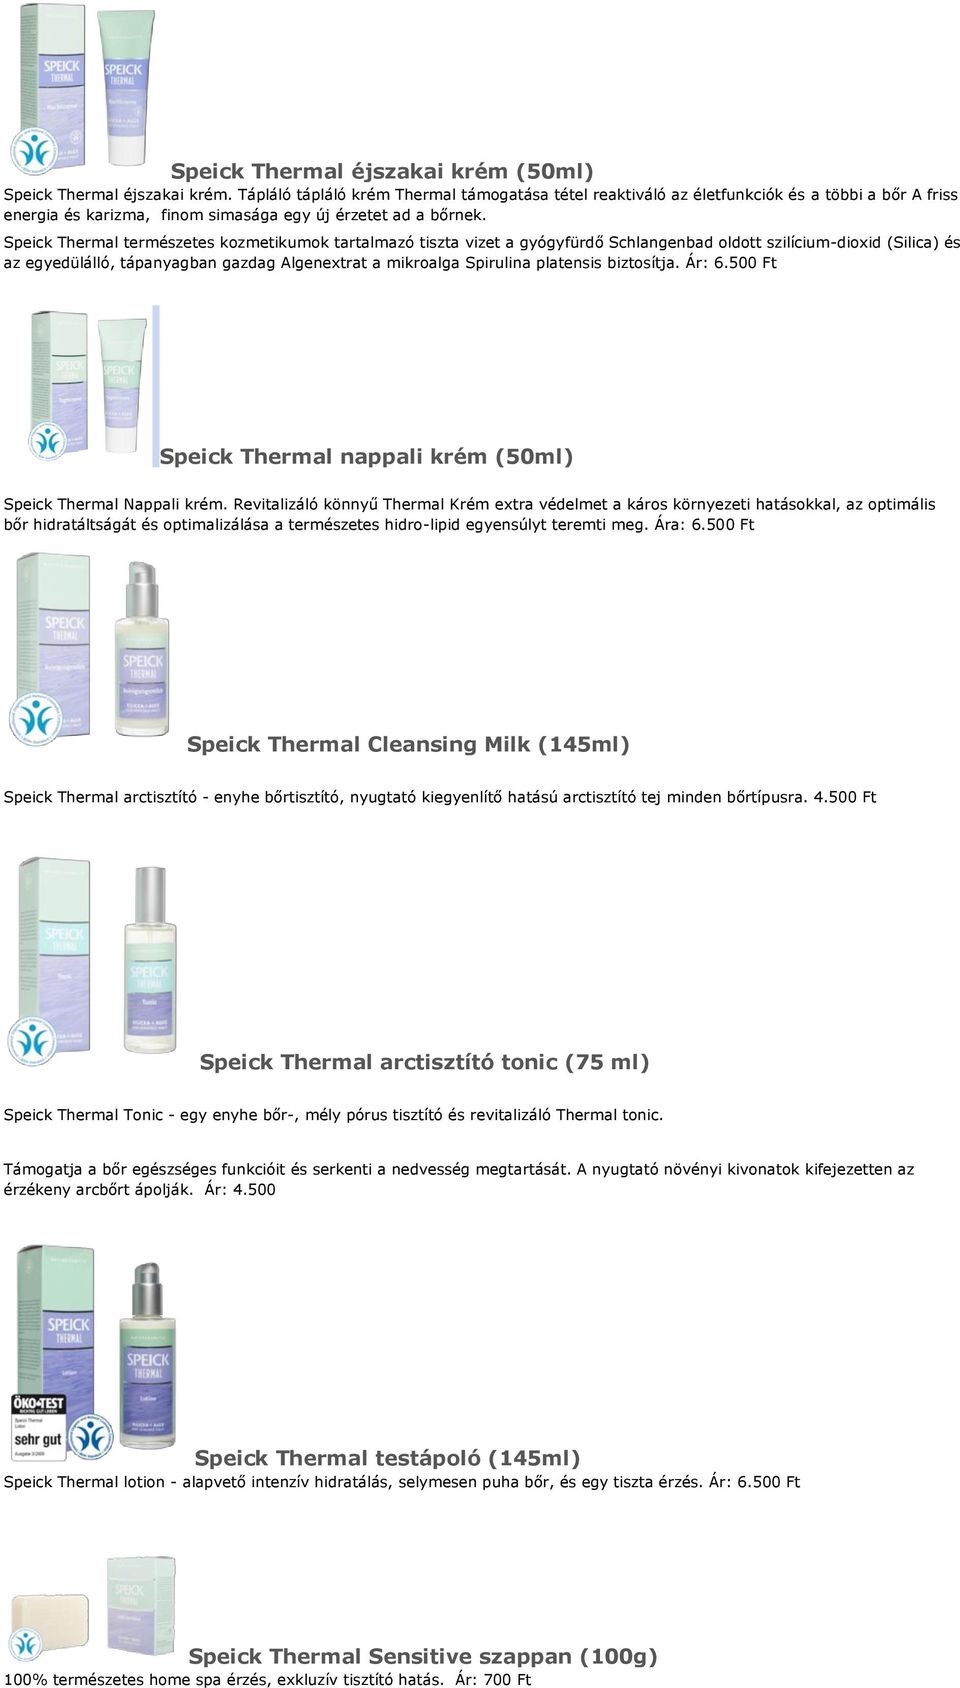 Speick Thermal természetes kozmetikumok tartalmazó tiszta vizet a gyógyfürdő Schlangenbad oldott szilícium-dioxid (Silica) és az egyedülálló, tápanyagban gazdag Algenextrat a mikroalga Spirulina